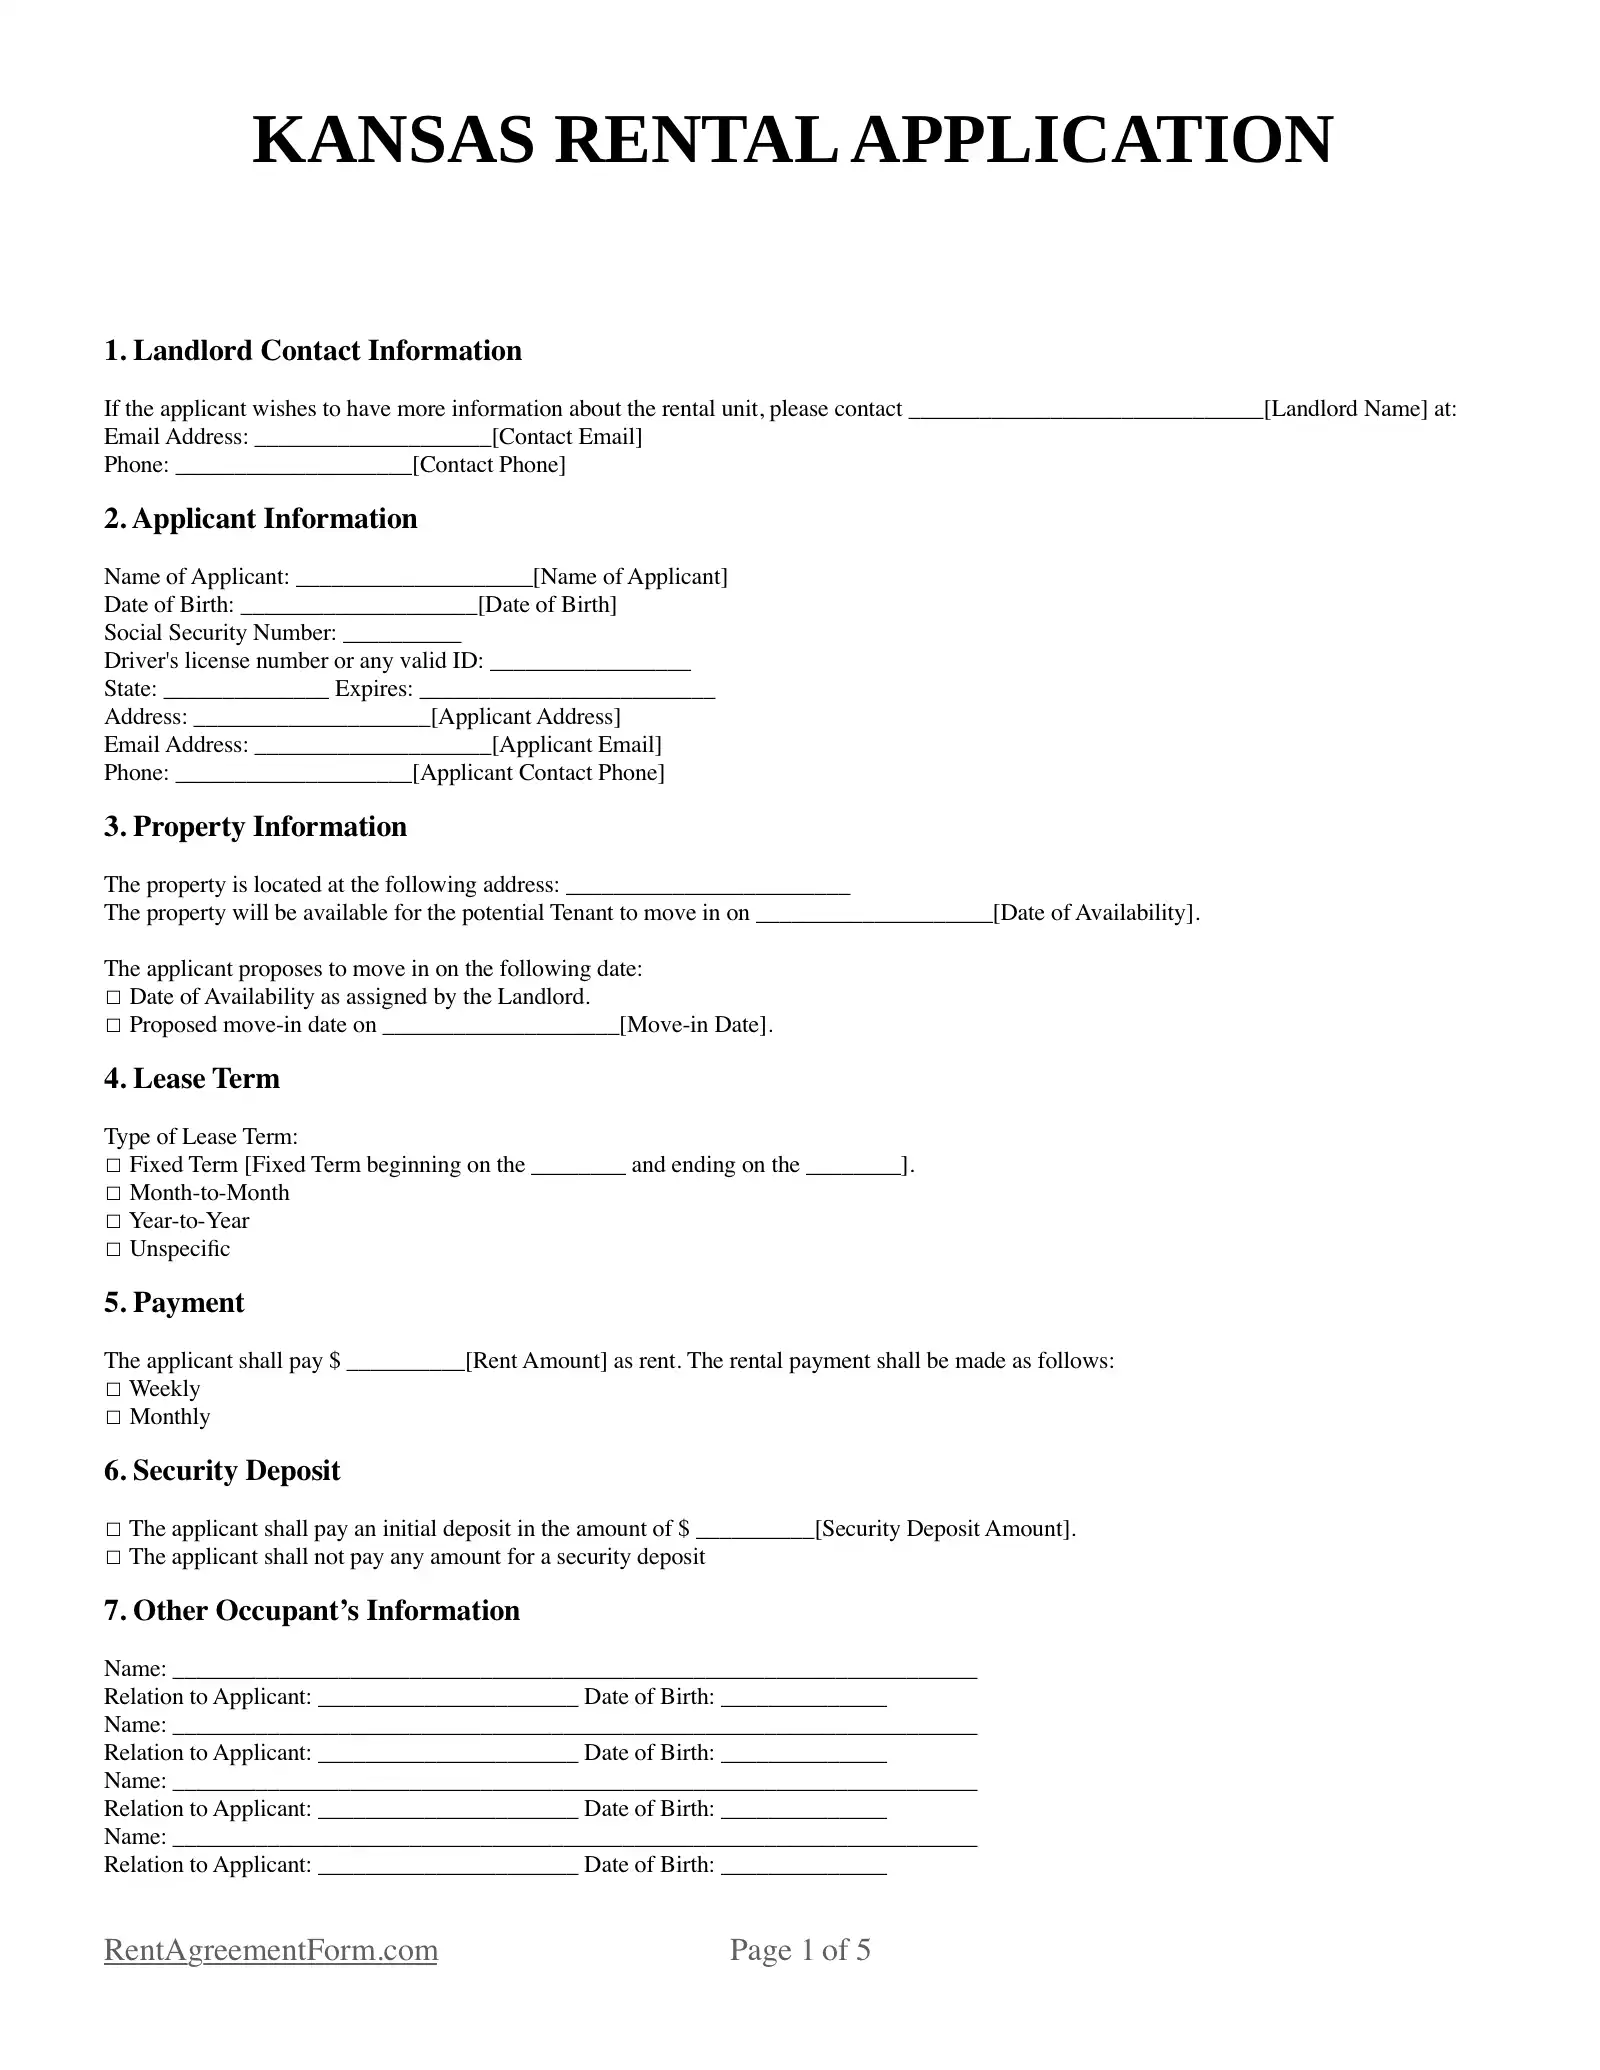 Kansas Rental Application Sample